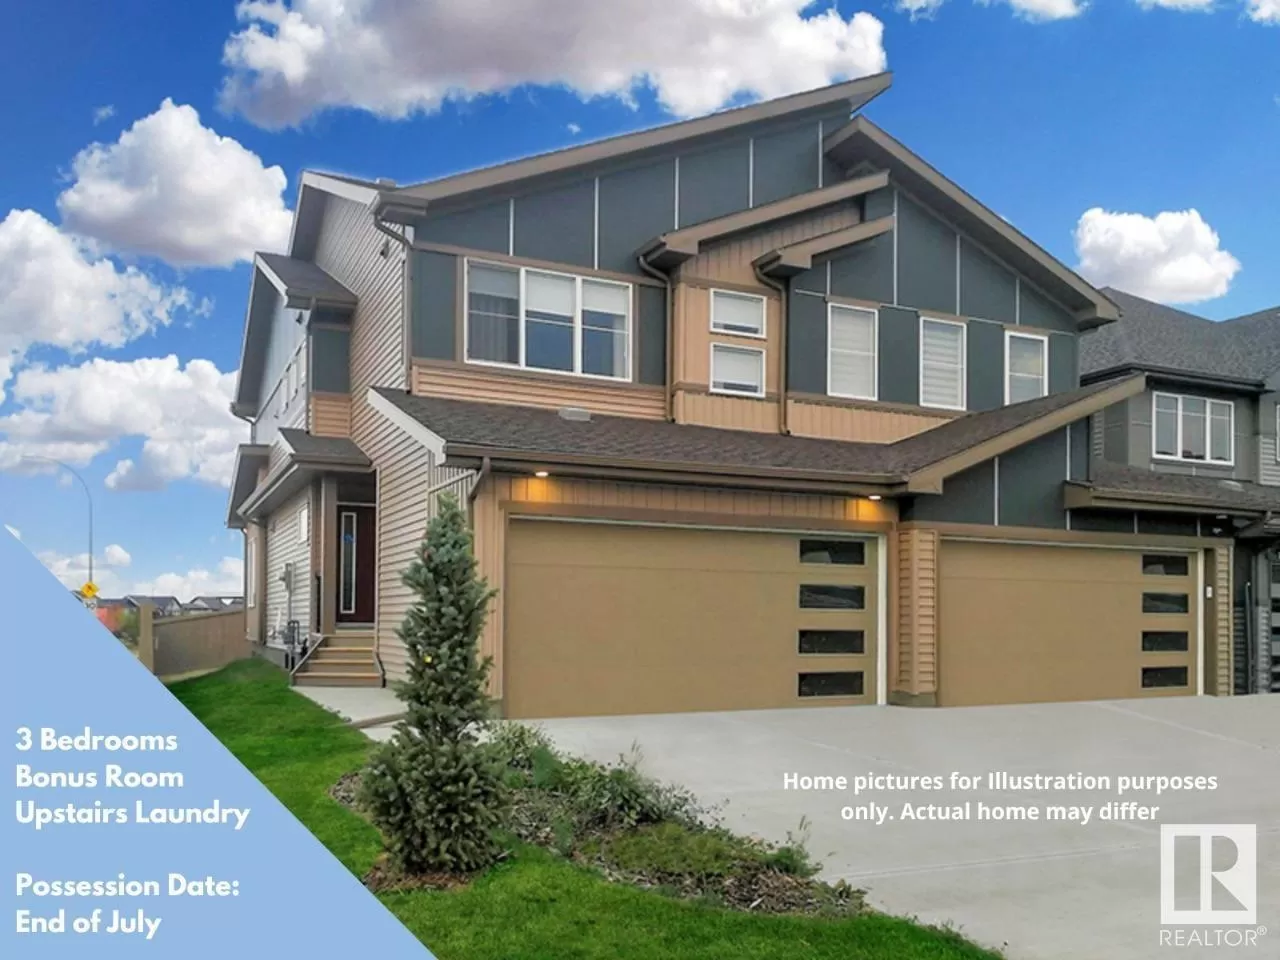 Duplex for rent: 54 Springbrook Wd, Spruce Grove, Alberta T7X 0L4